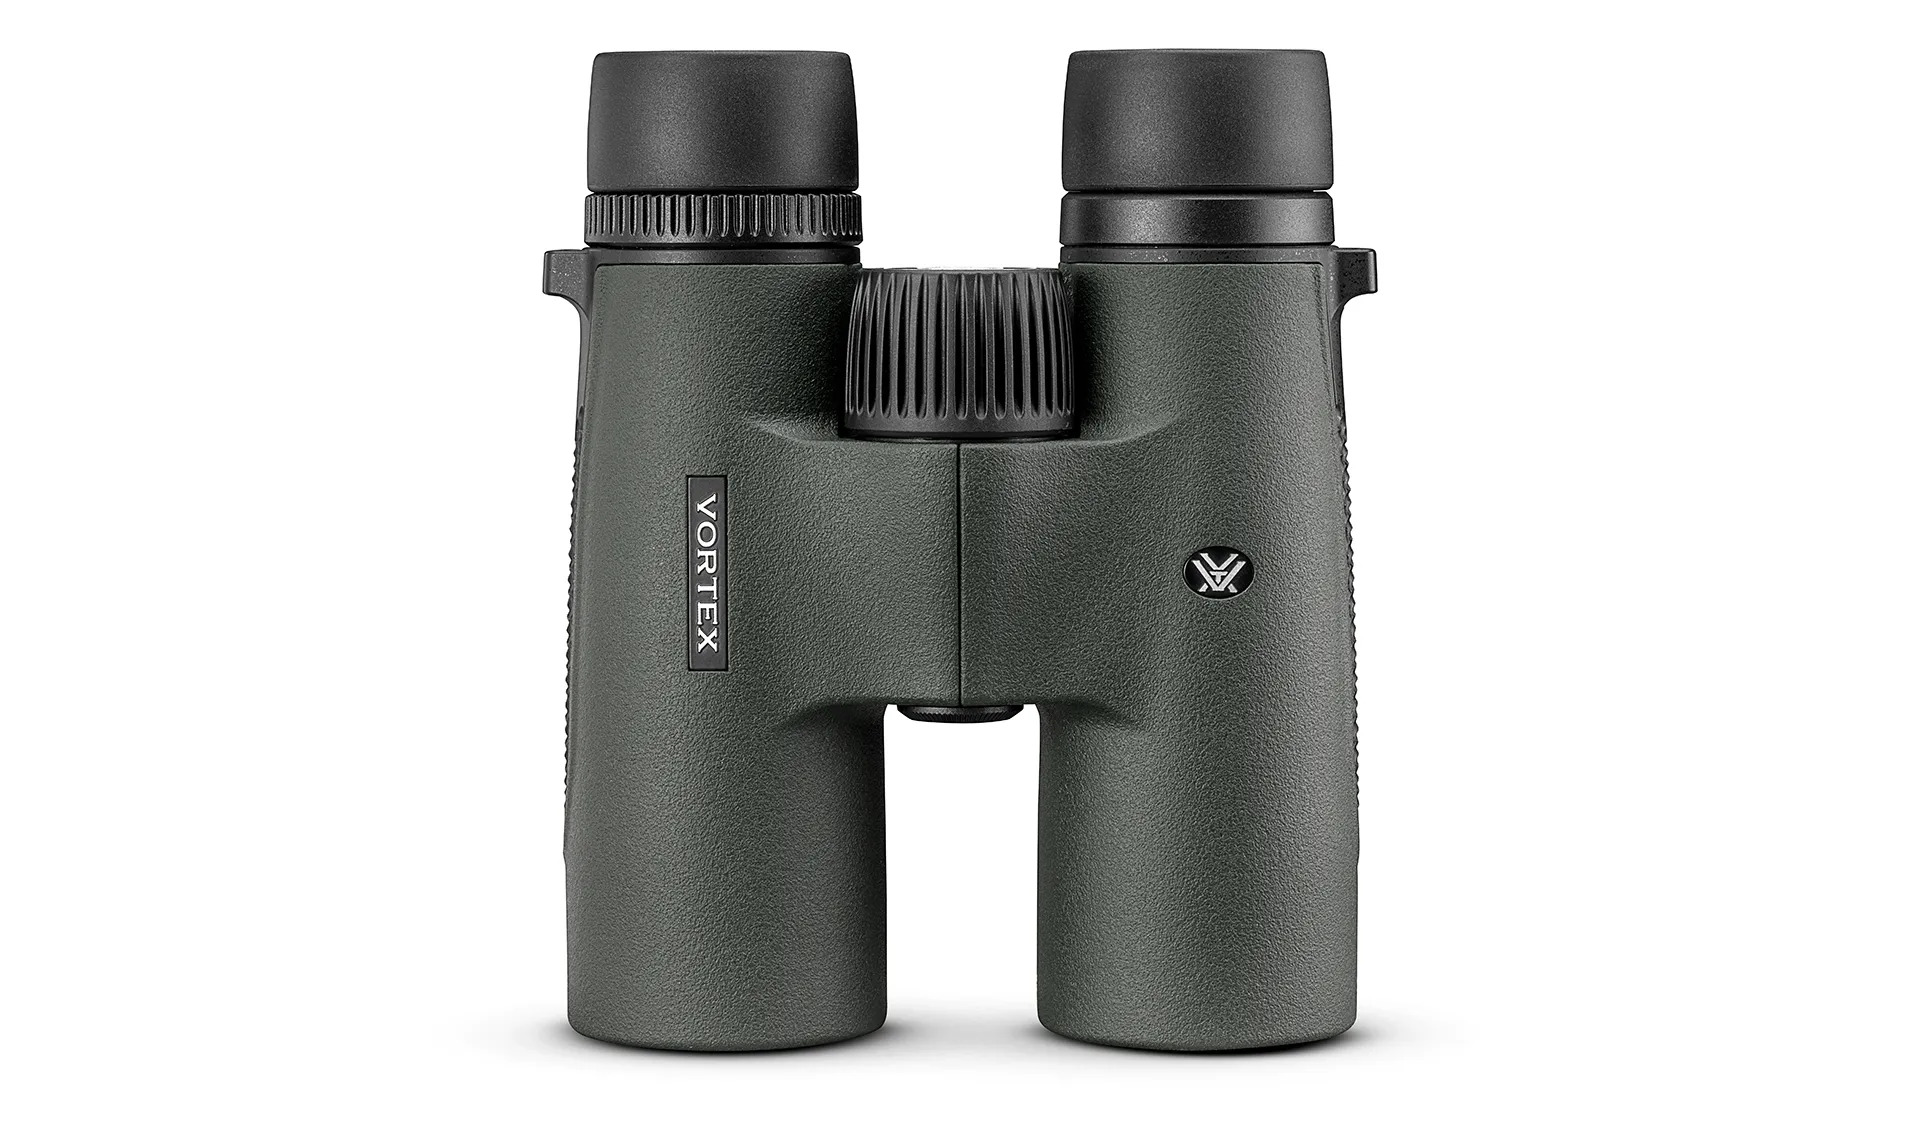 Vortex's NEW Binoculars: The Triumph HD 10x42